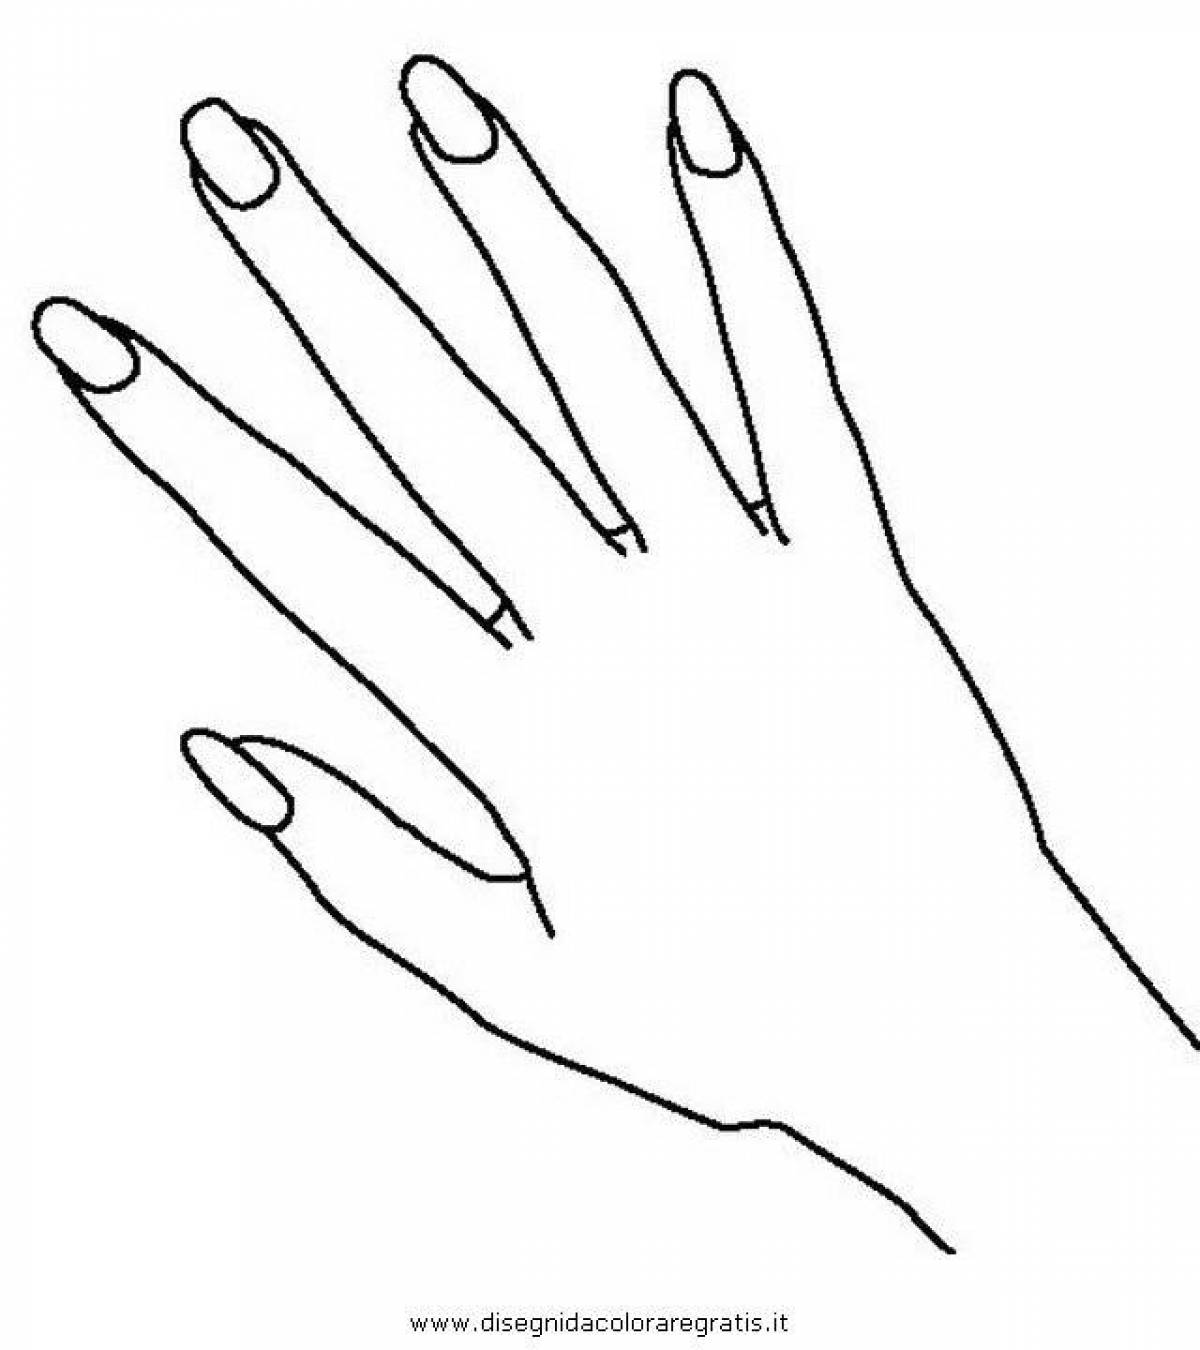 Раскраска игривая рука с ногтями